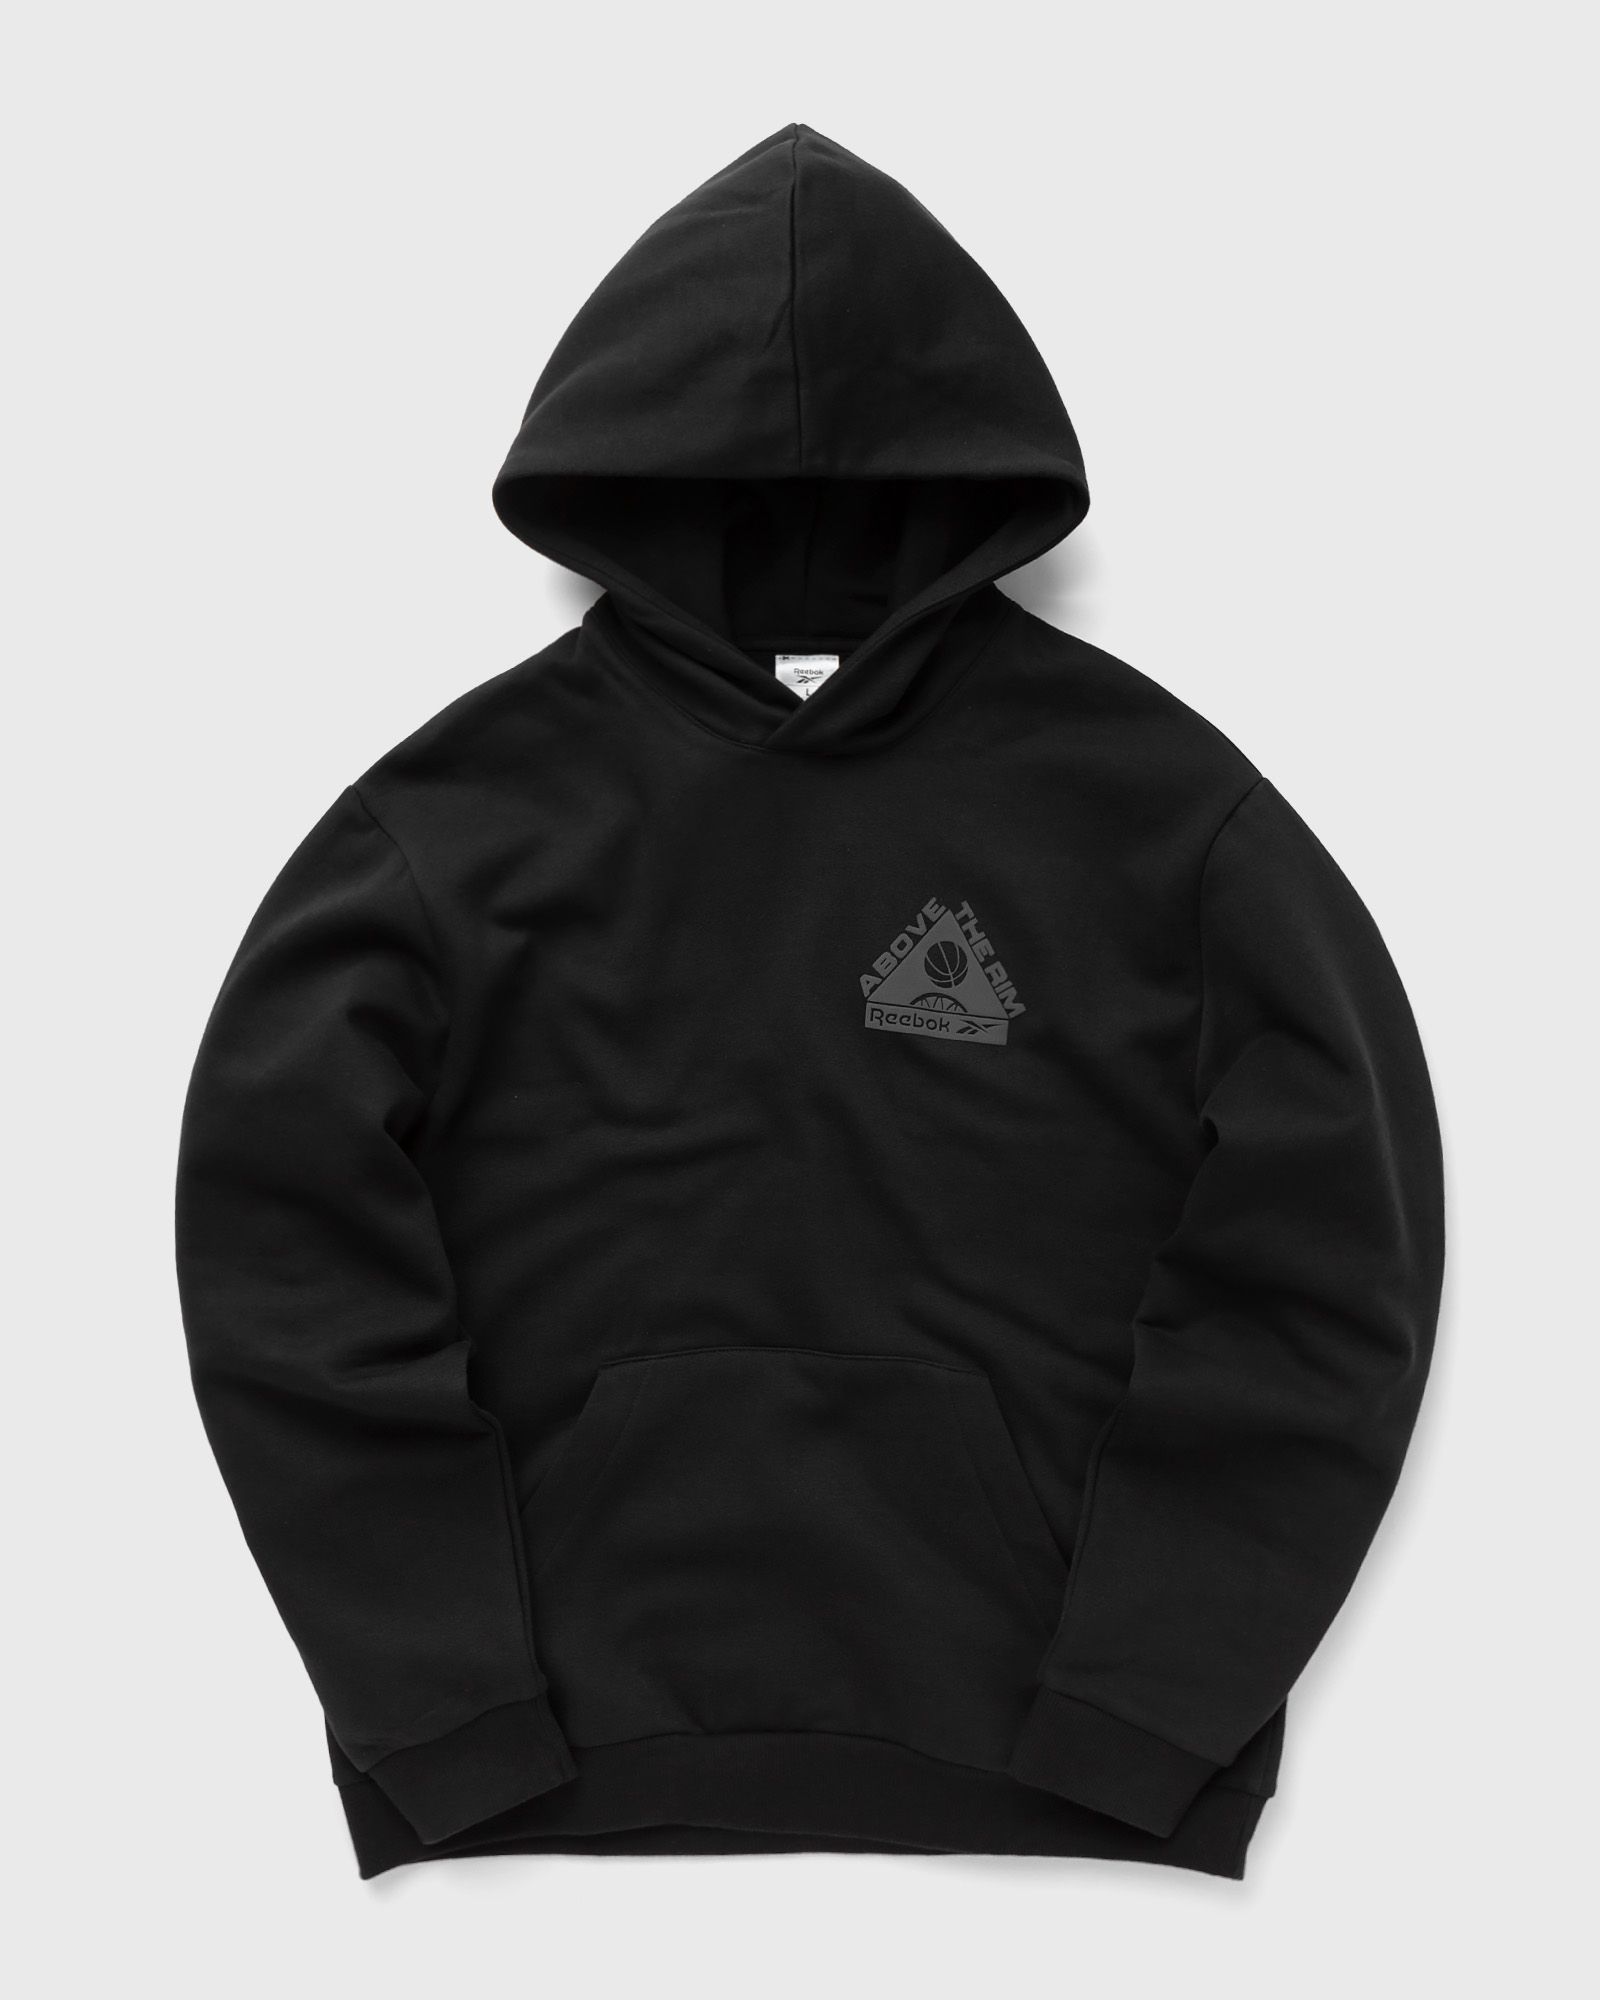 Reebok - bb atr hoodie men hoodies black in größe:xxl